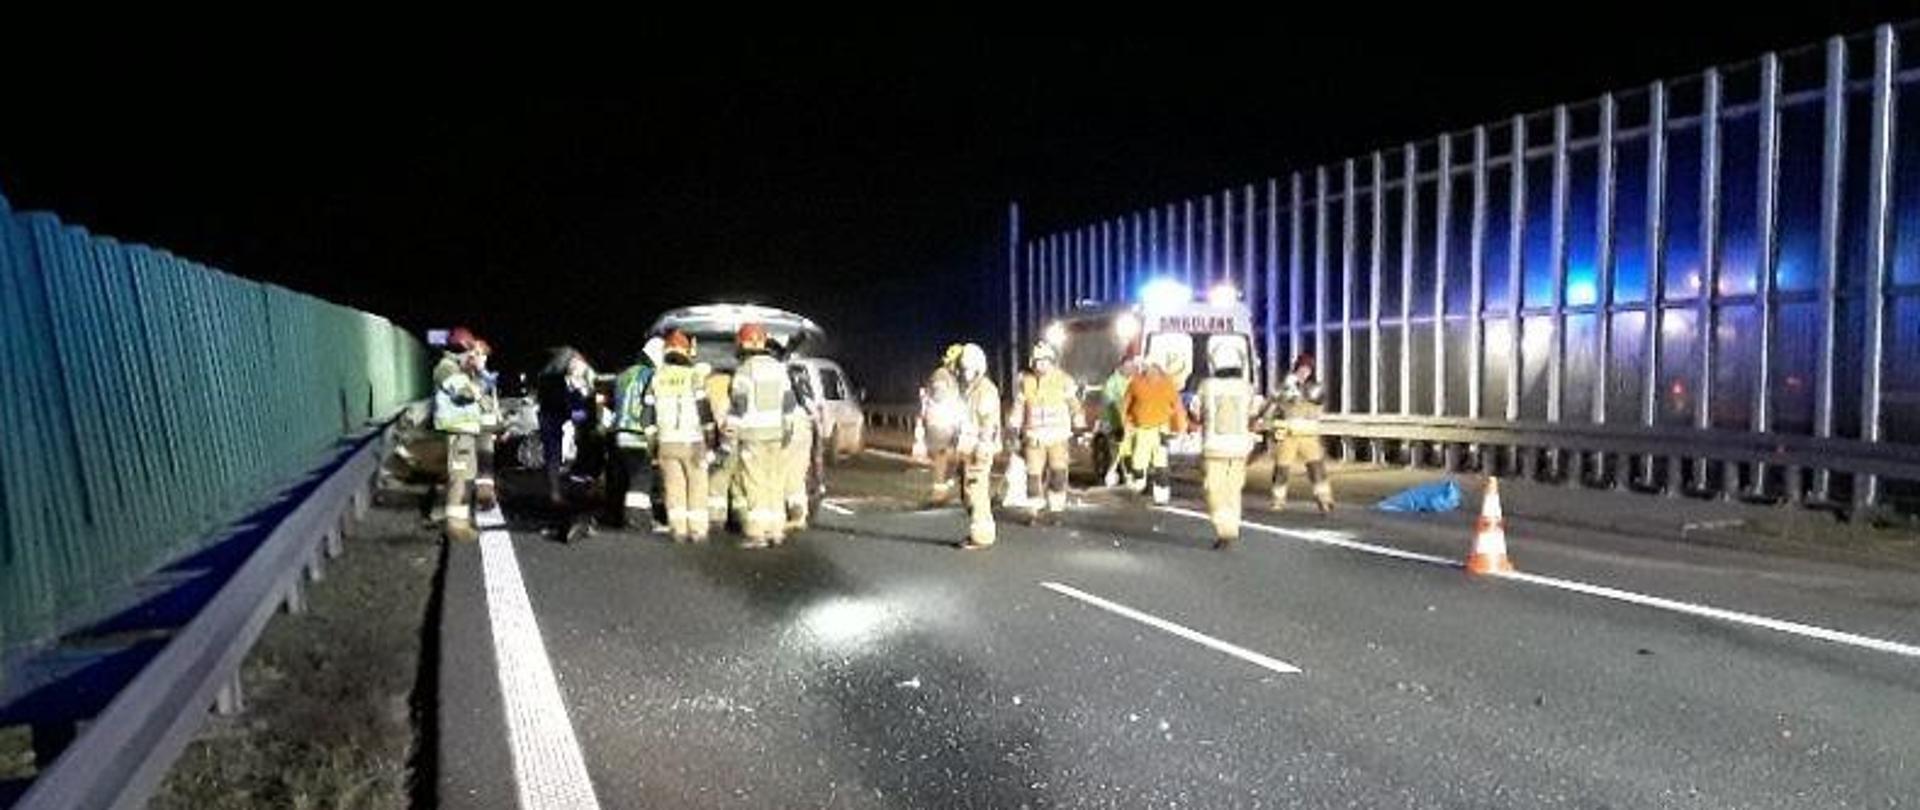 Na zdjęciu samochody znajdujące się na autostradzie po wypadku. Przed nimi strażacy w ubraniach specjalnych prowadzący czynności.